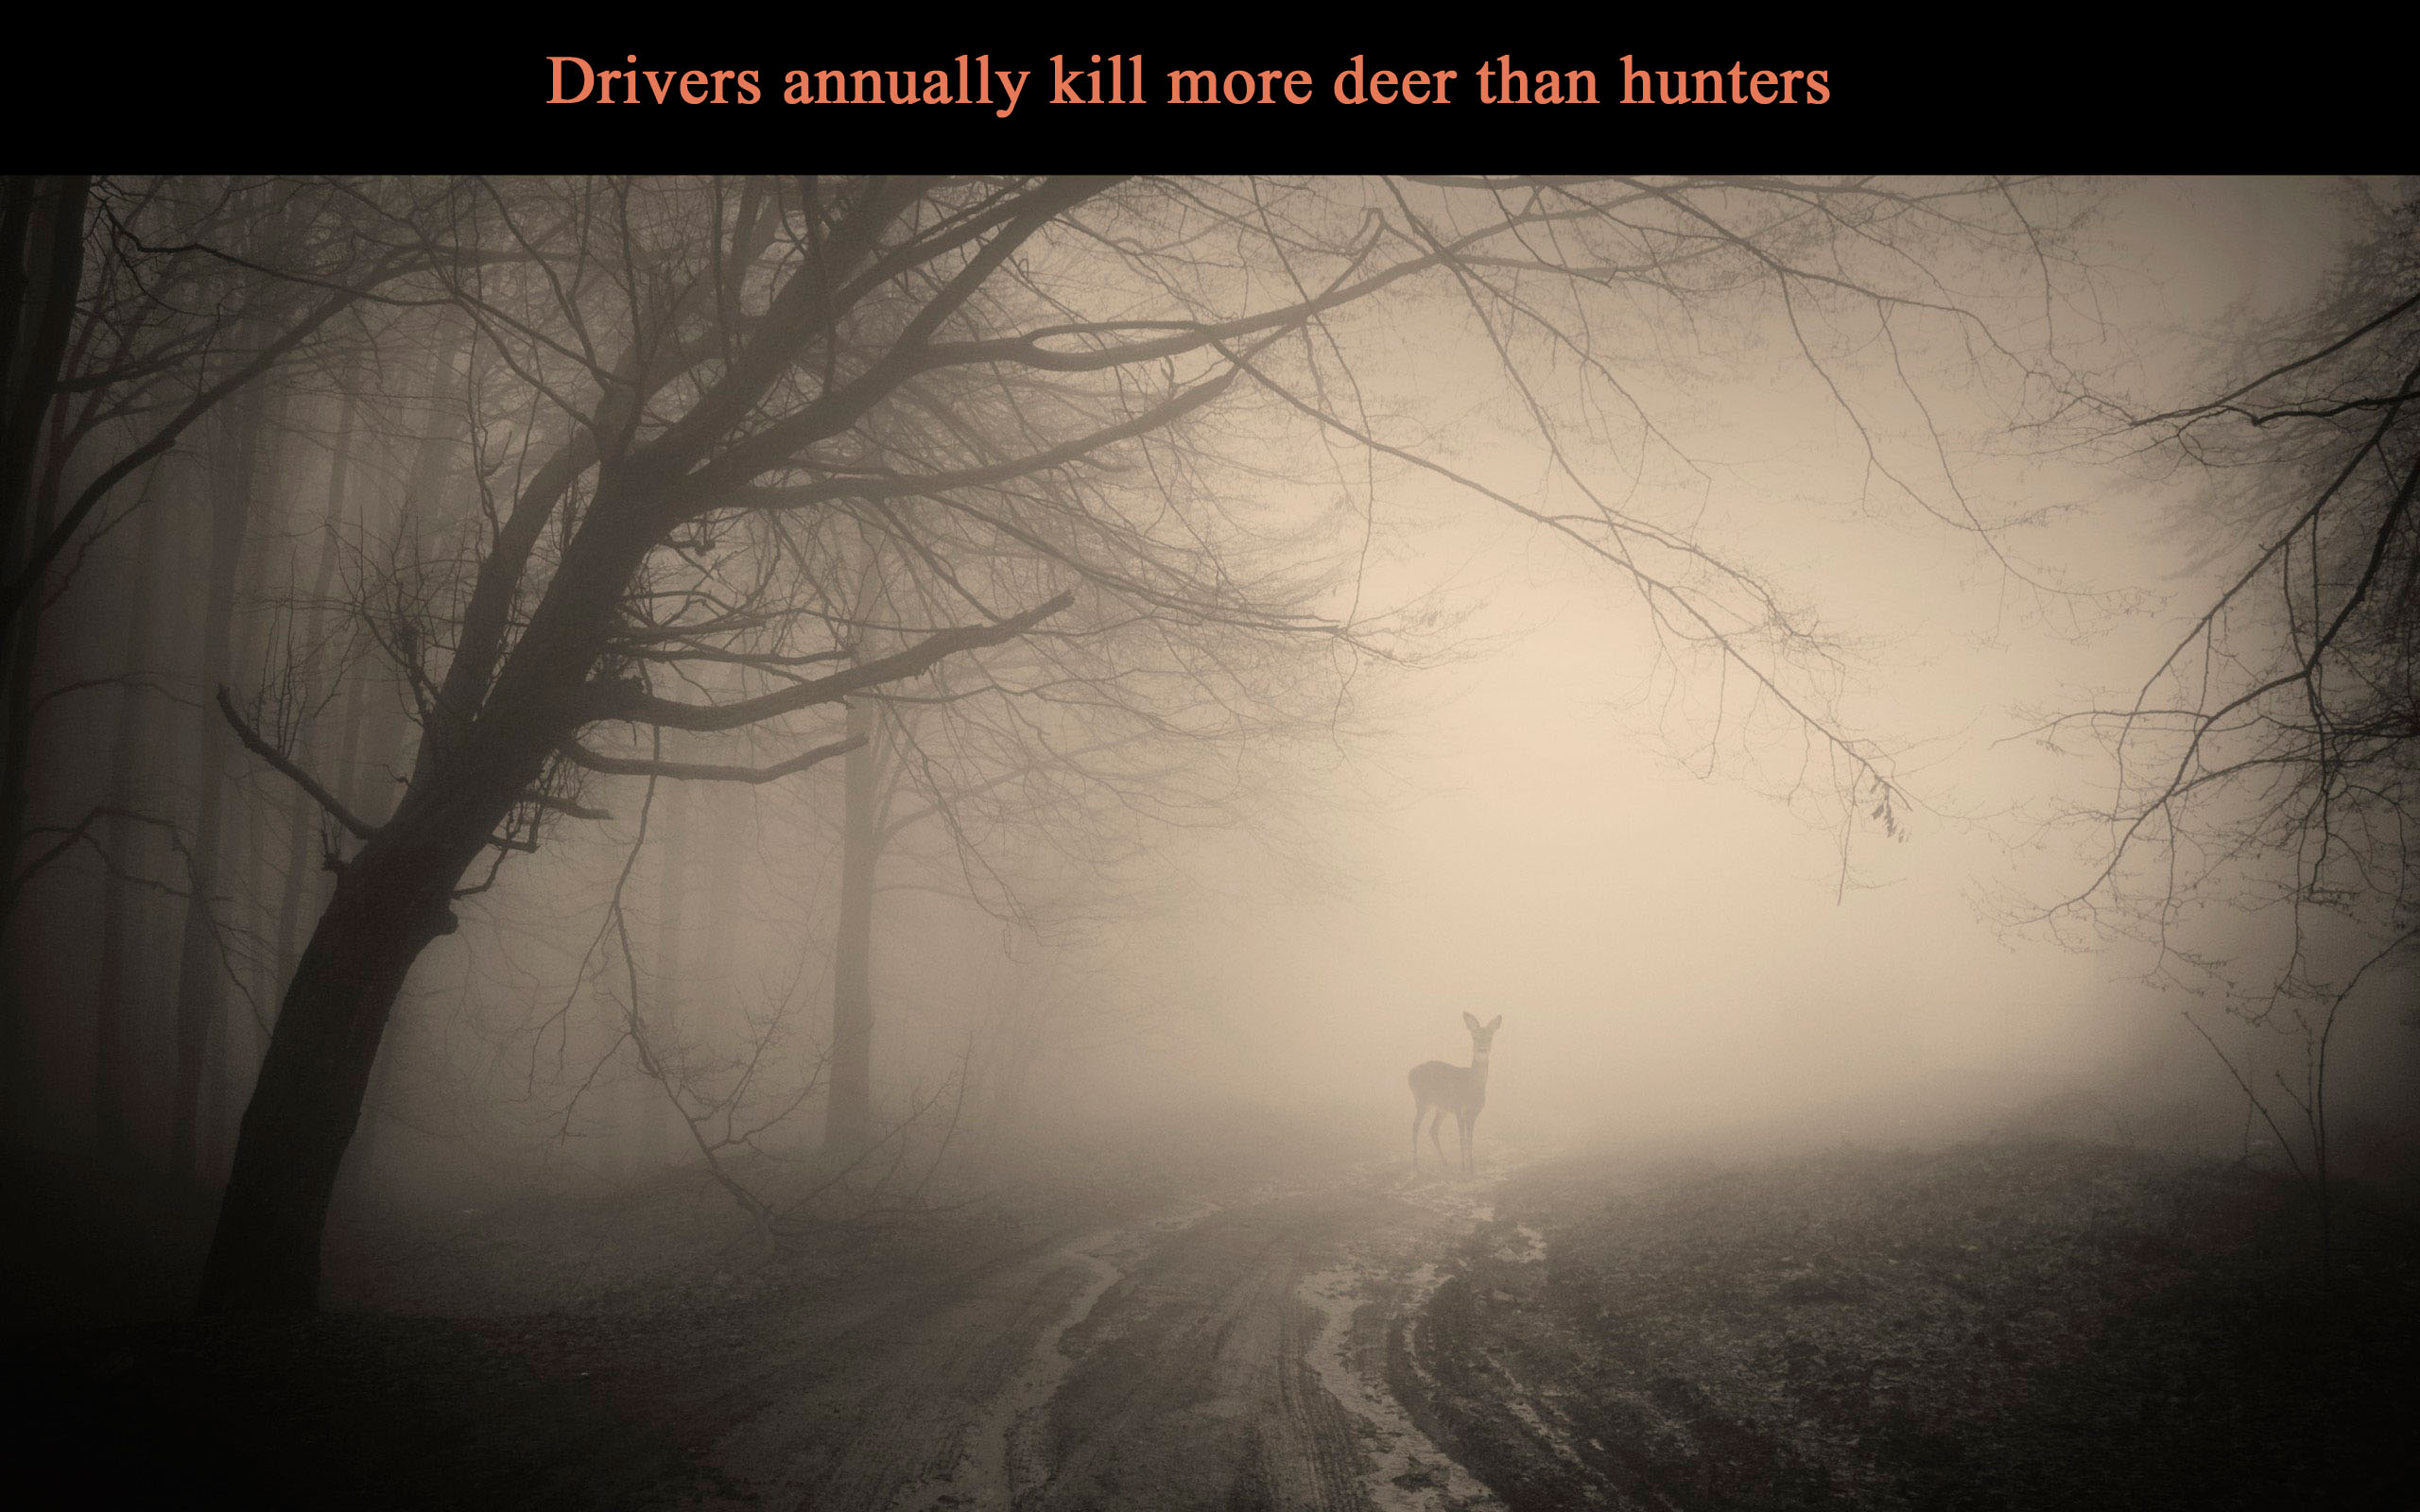 car, driver, driver road, driver kill deer